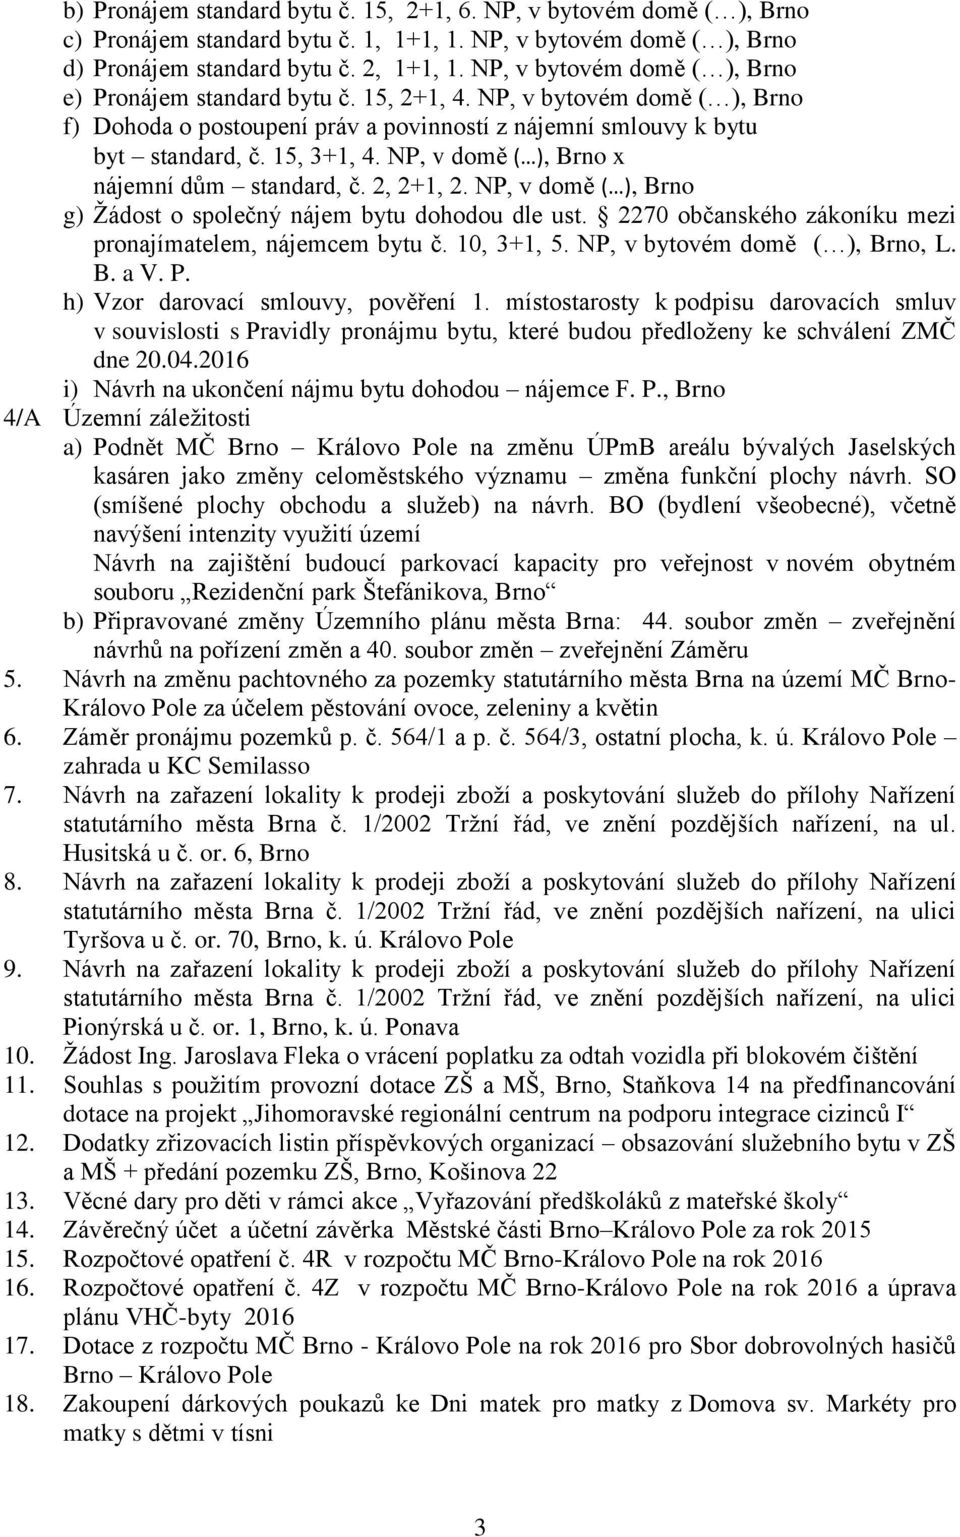 NP, v domě ( ), Brno x nájemní dům standard, č. 2, 2+1, 2. NP, v domě ( ), Brno g) Žádost o společný nájem bytu dohodou dle ust. 2270 občanského zákoníku mezi pronajímatelem, nájemcem bytu č.